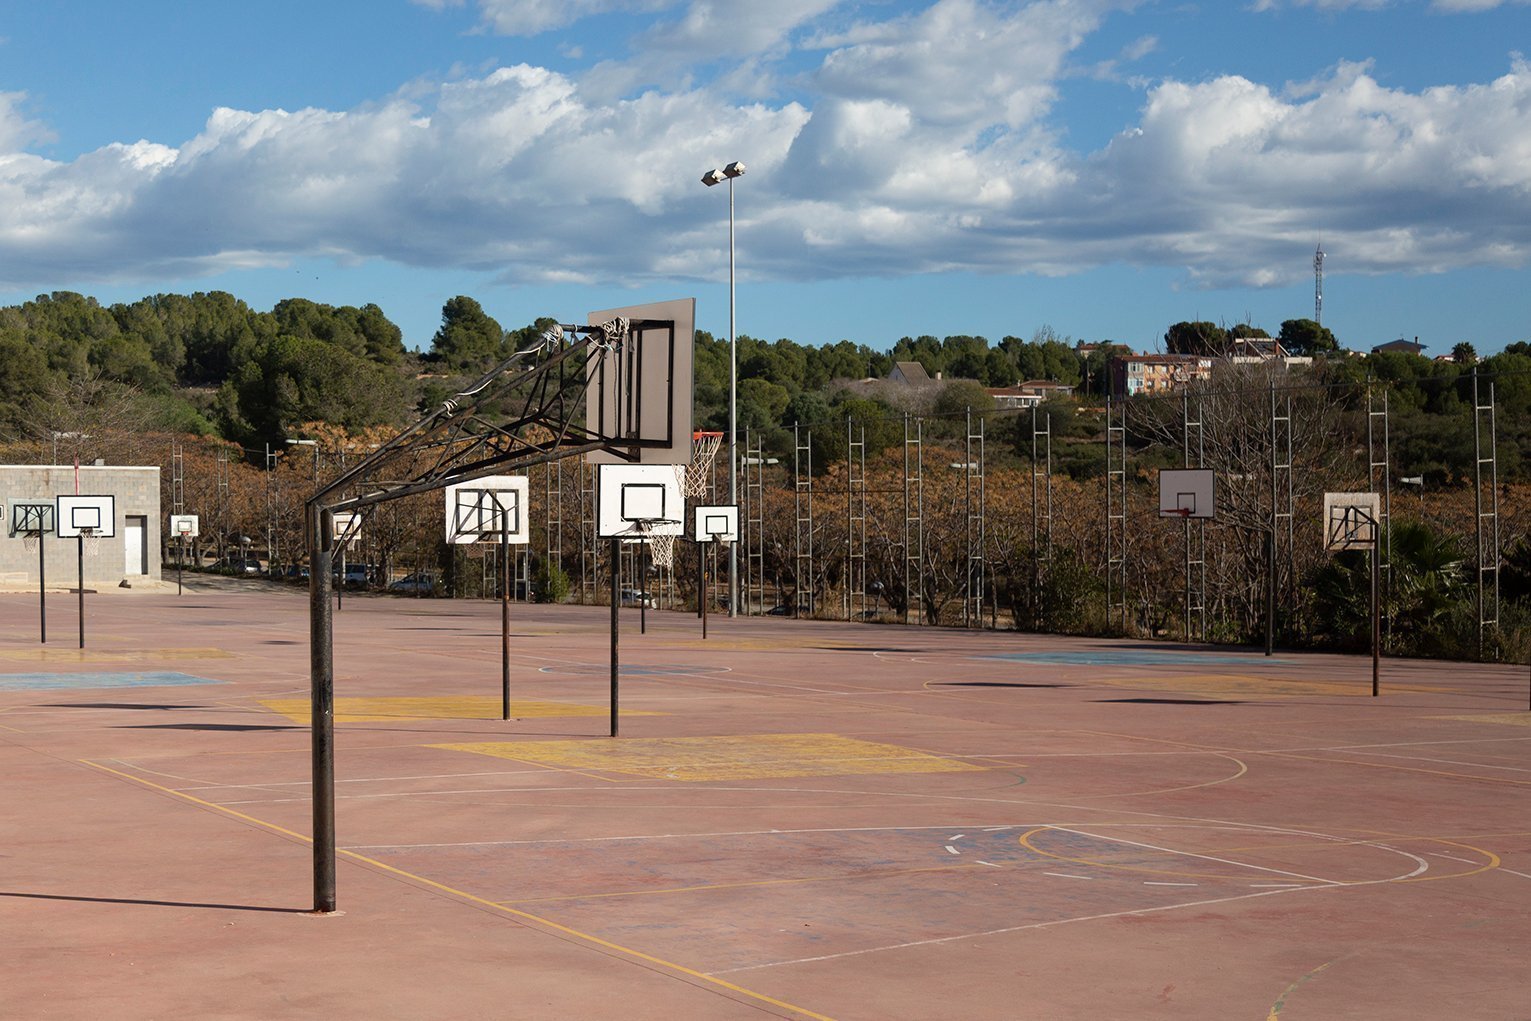 Pistes-basquet-exteriors-1-1-1.jpg